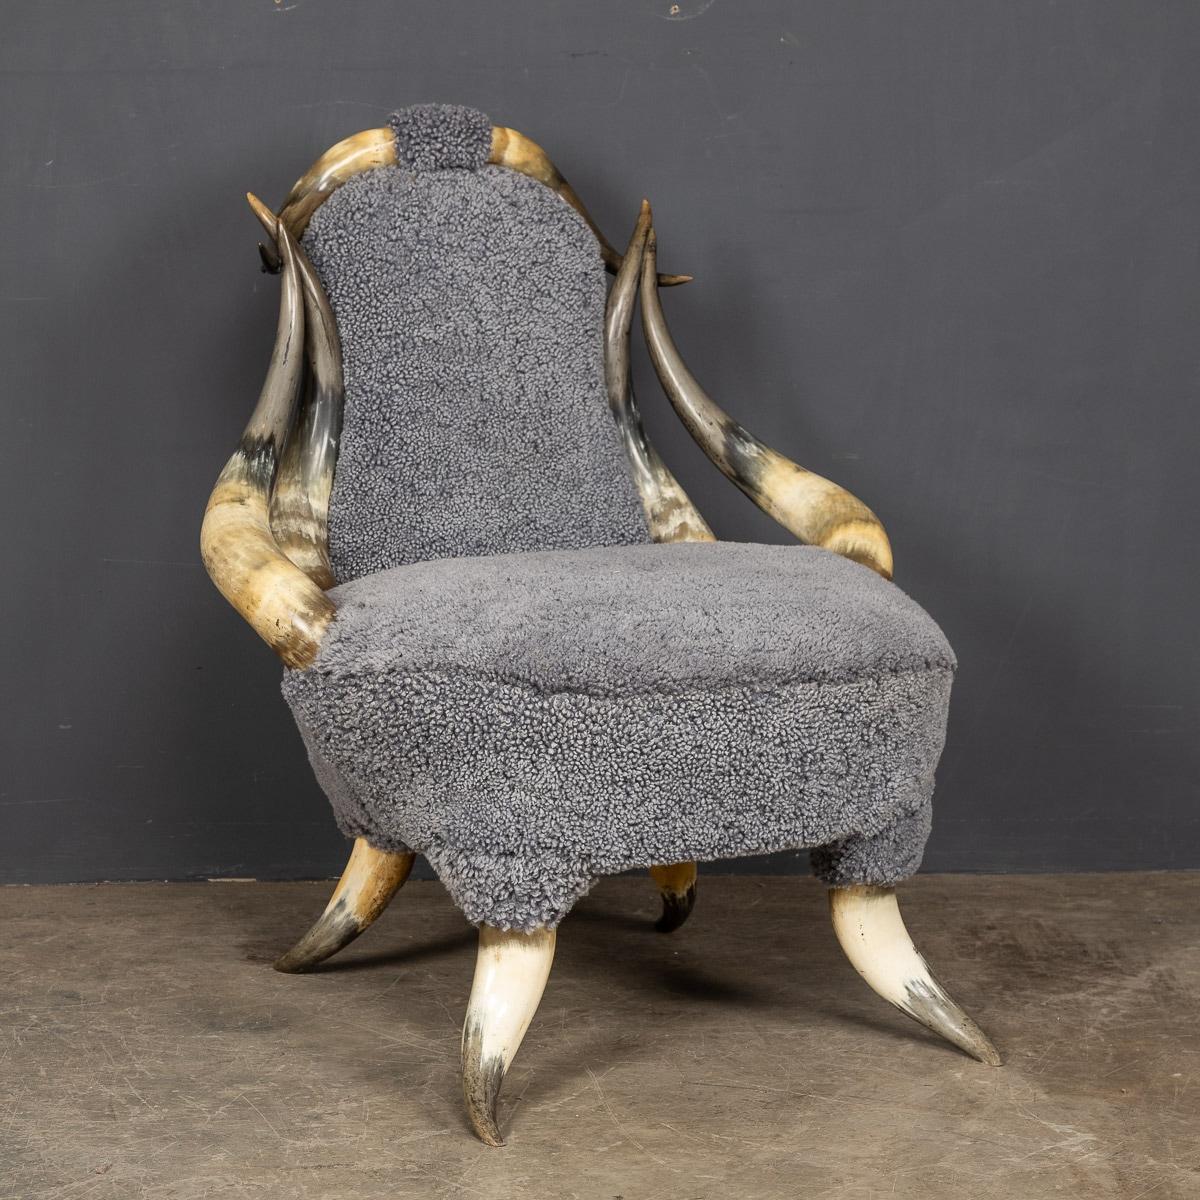 Antike Stühle aus dem 19. Jahrhundert, die aus Stierhörnern gefertigt sind, sehr ungewöhnlich. Diese Stühle stammen in der Regel aus dem deutsch-schweizerischen Grenzgebiet (Schwarzwald) und waren in der zweiten Hälfte des 19. Jahrhunderts ein